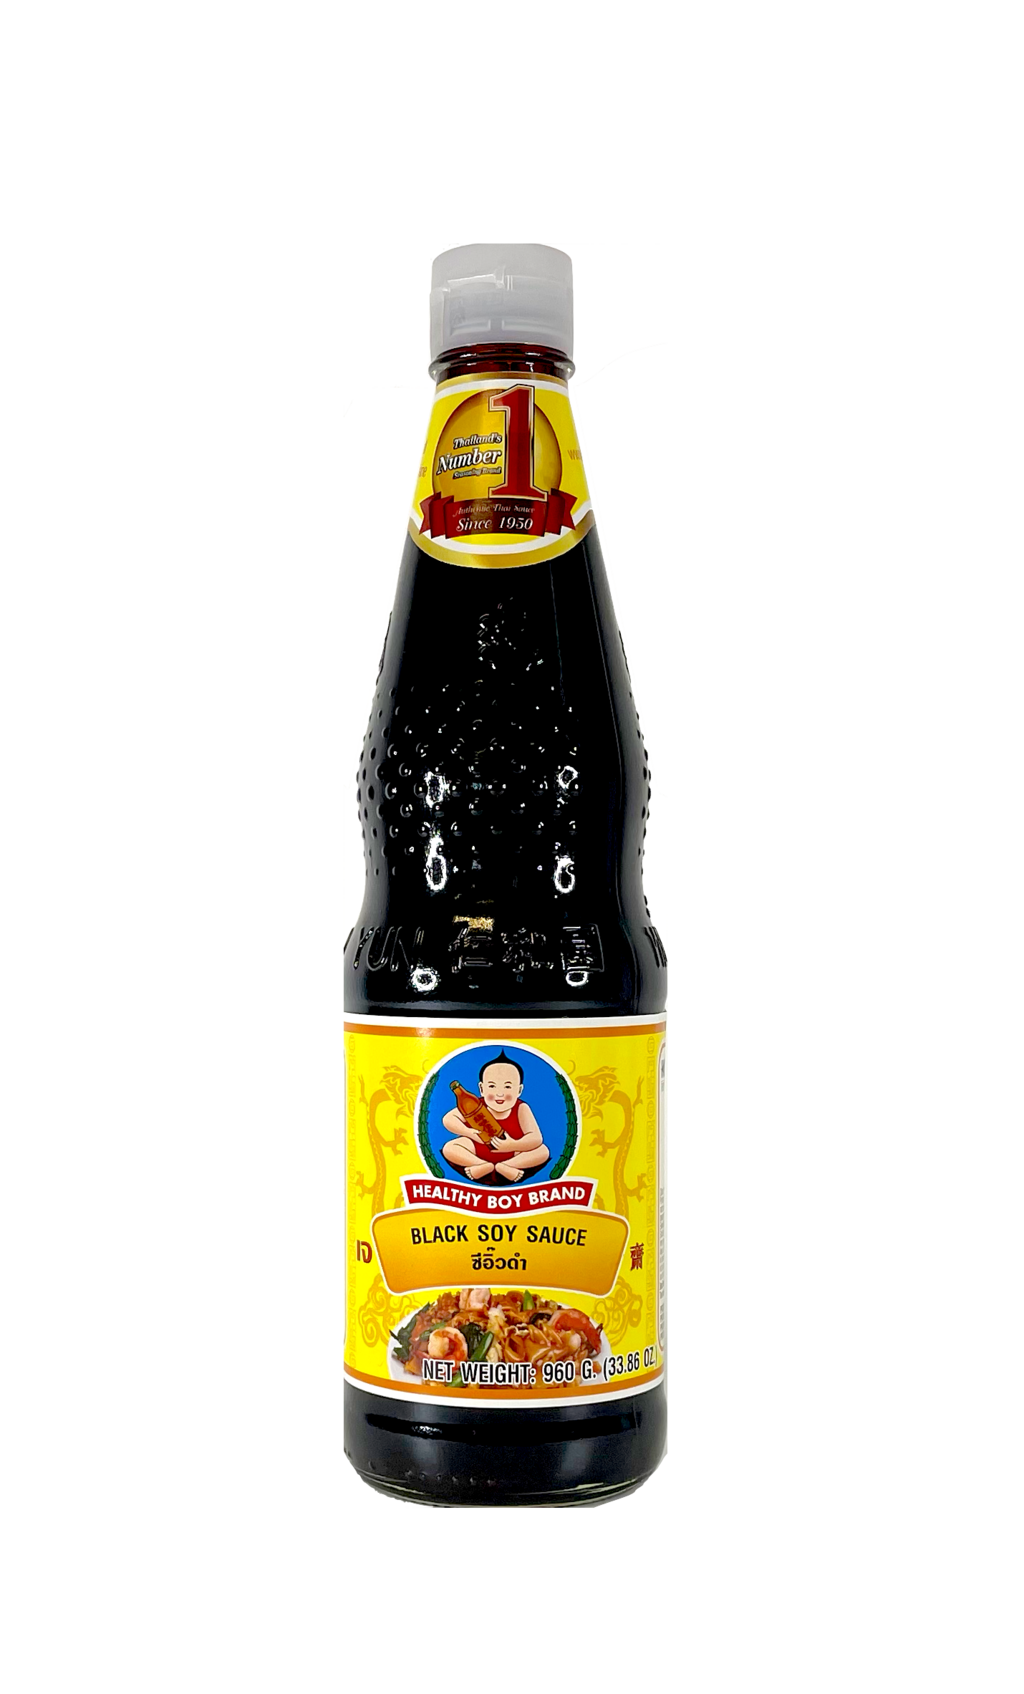 黑酱油 黄瓶 960g Healthy Boy 泰国